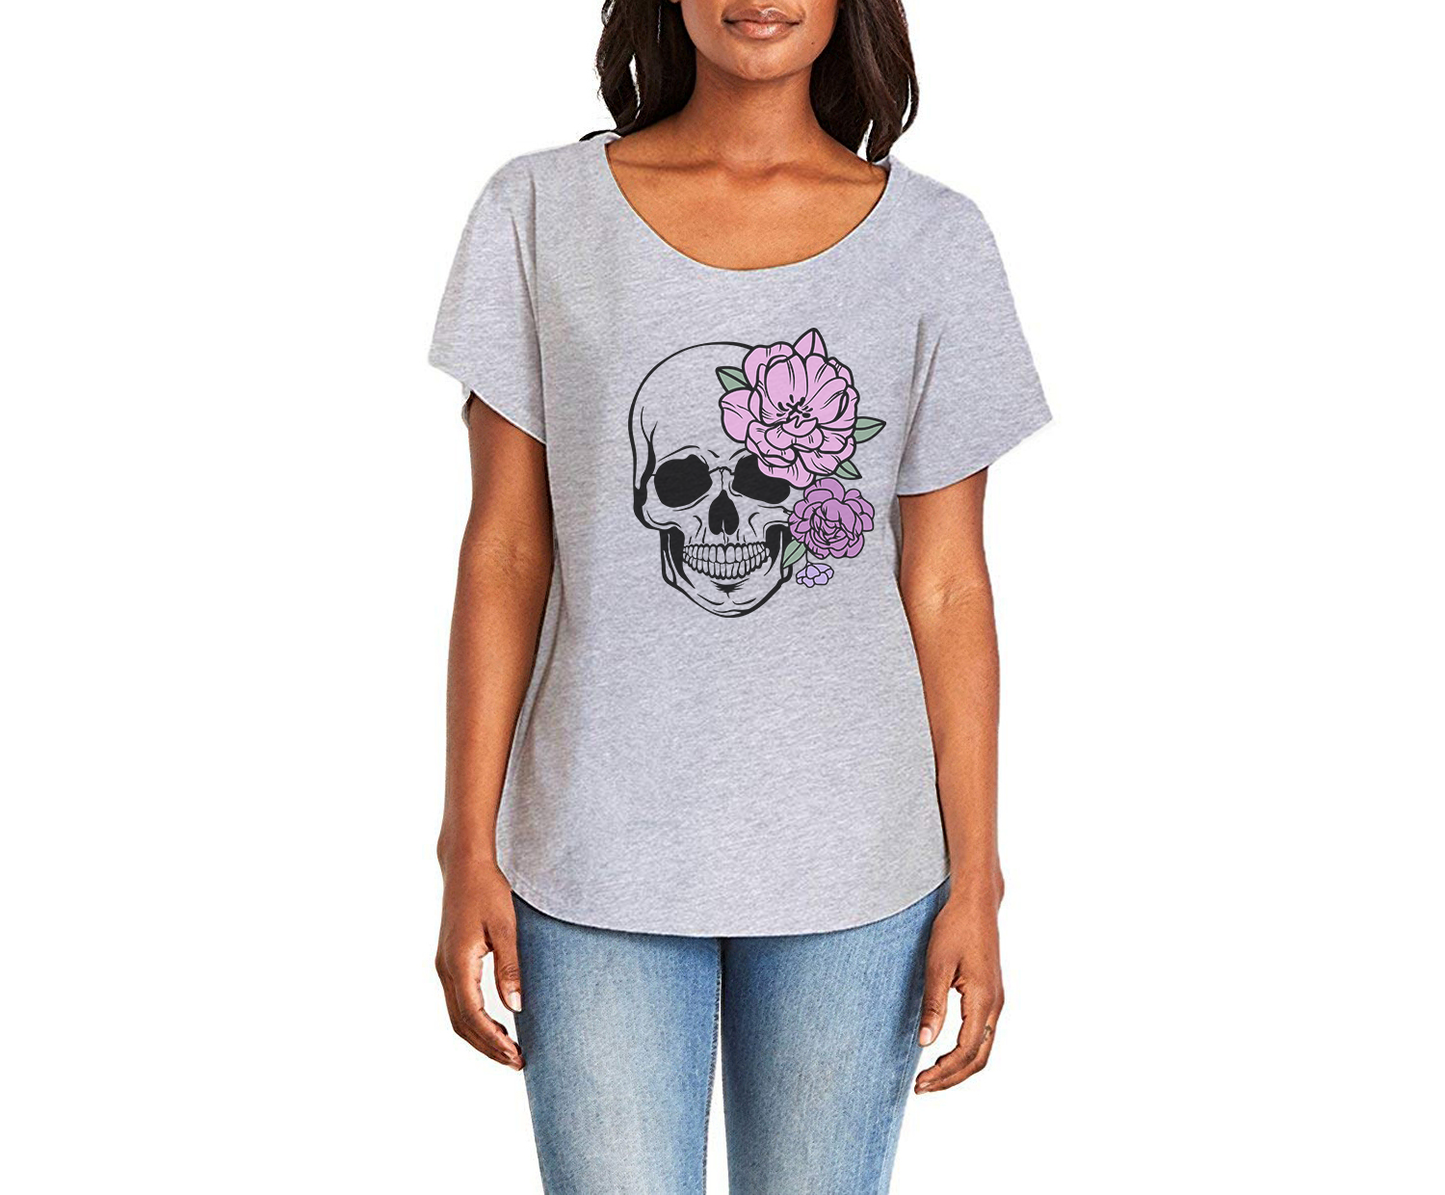 Purple Floral Skull Ladies Tee Shirt - In Grey & White